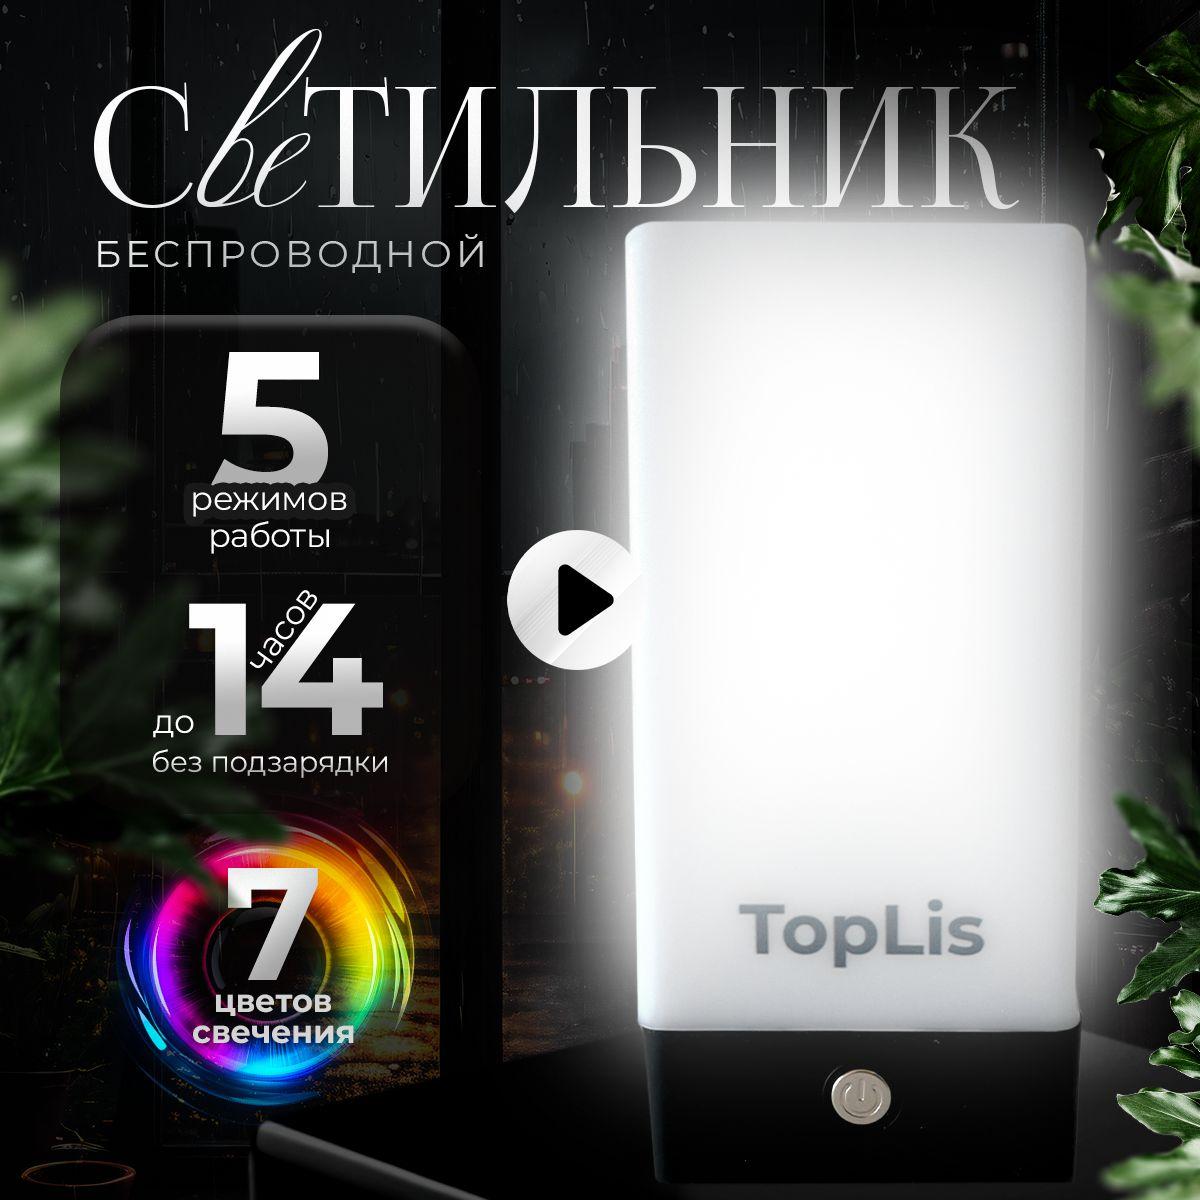 TopLis | Декоративный светильник, ночник